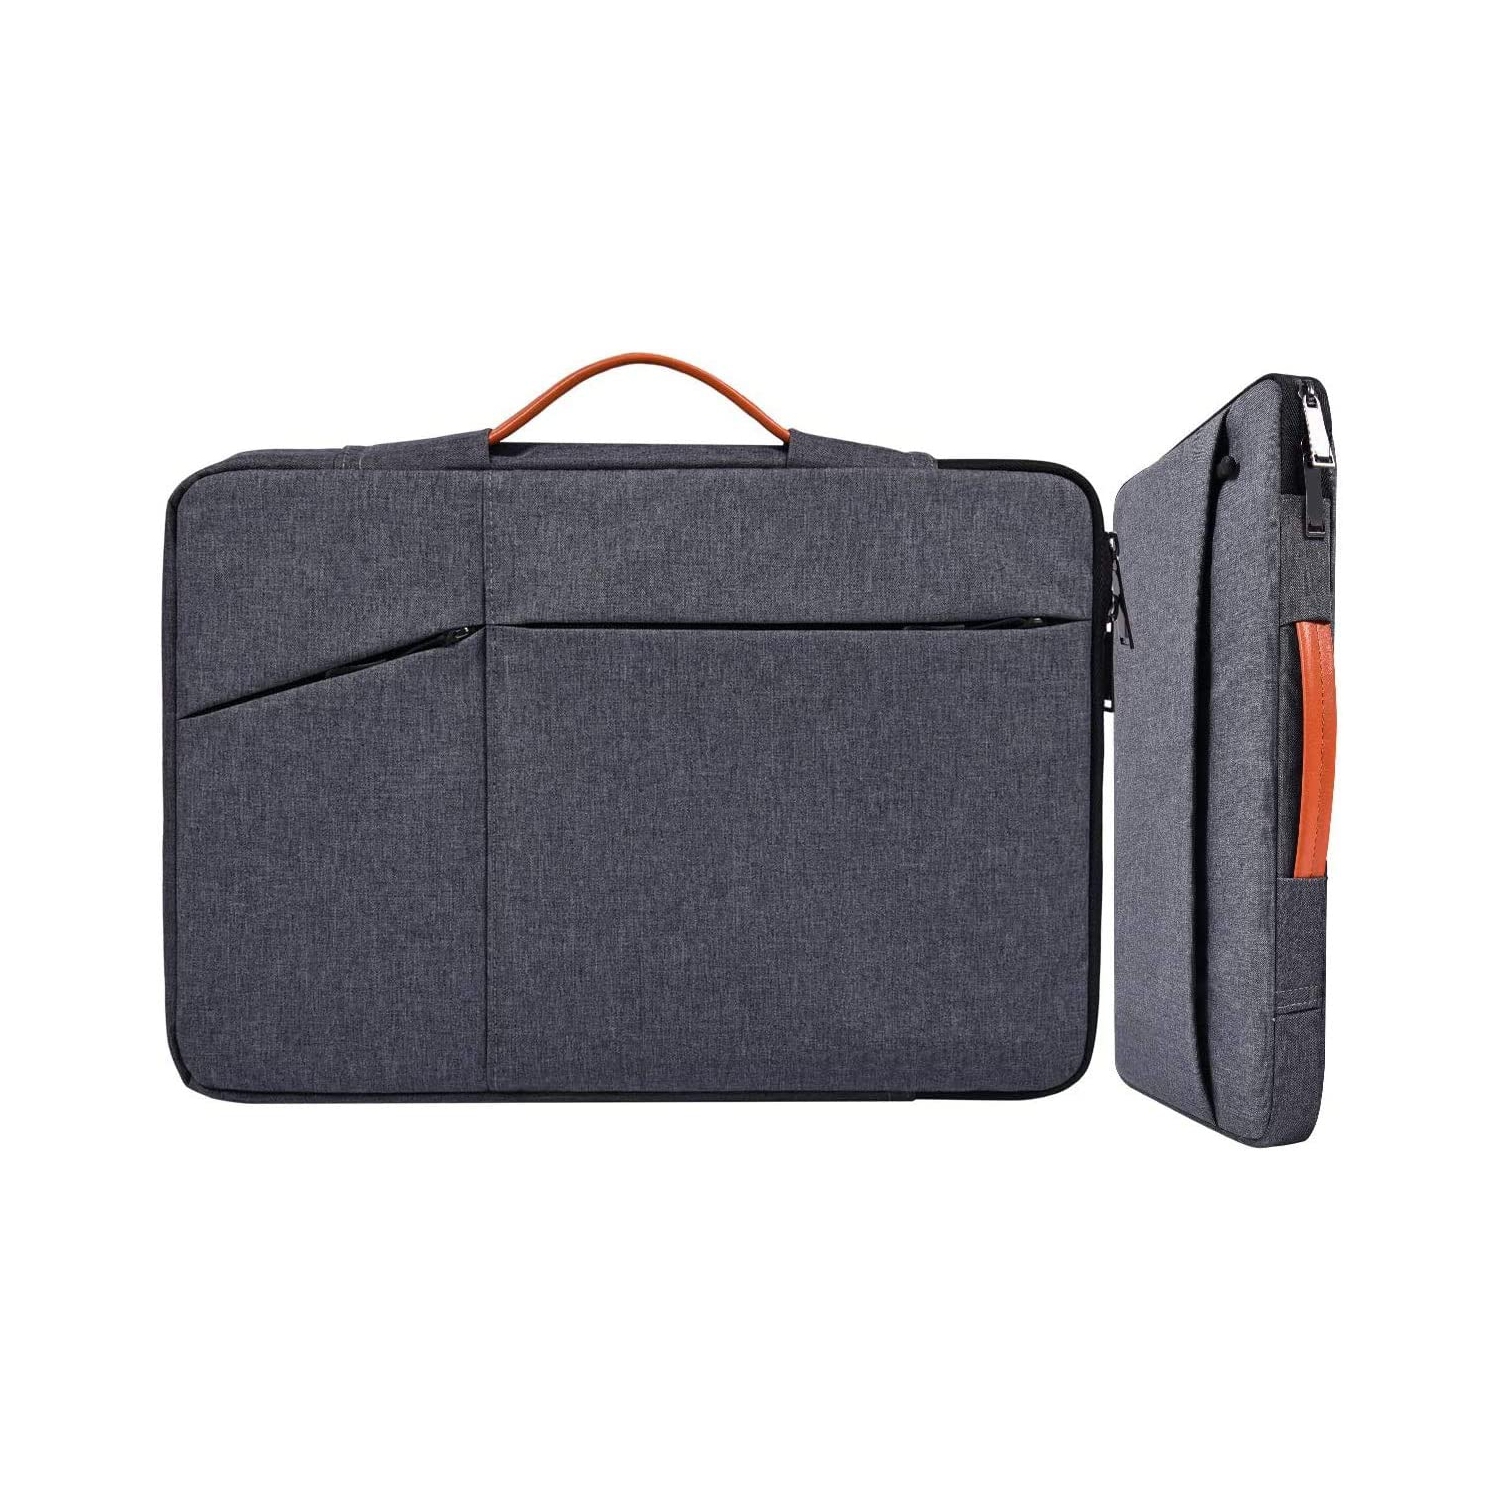 17.3 Inch Laptop Sleeve Bag for Men Women Briefcase for Acer Predator 17, HP Envy 17/Pavilion 17/OMEN 17.3, Dell